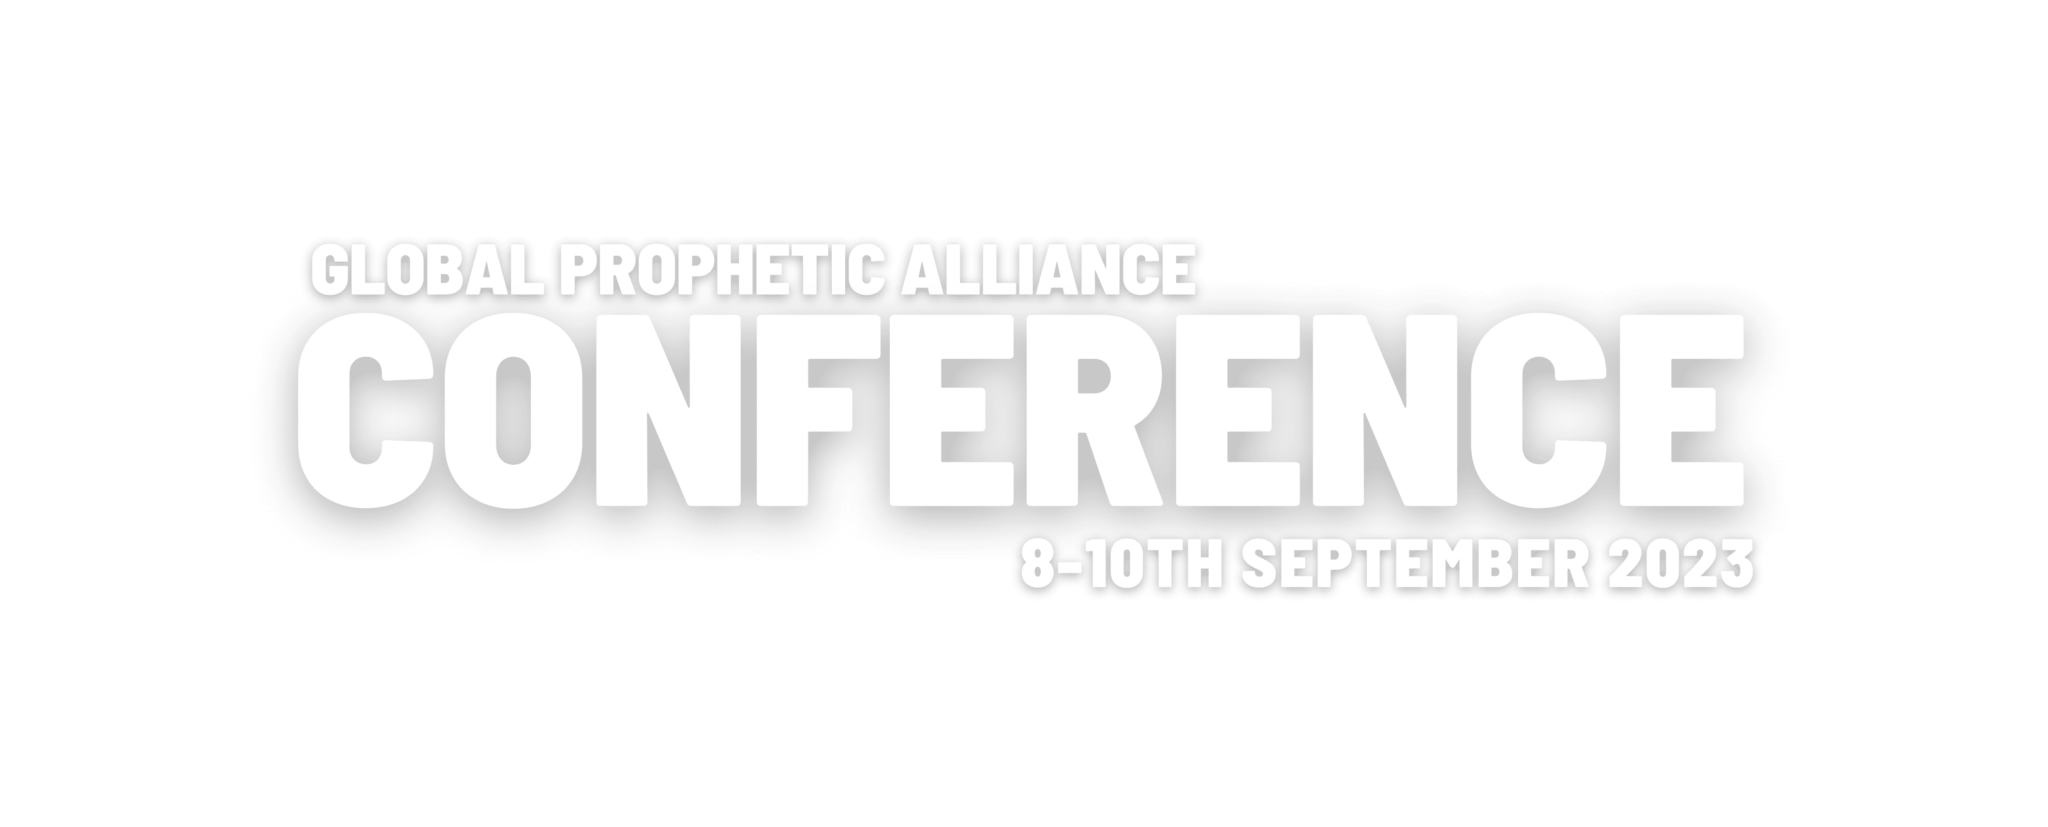 GPA Conference 2023 Global Prophetic Alliance